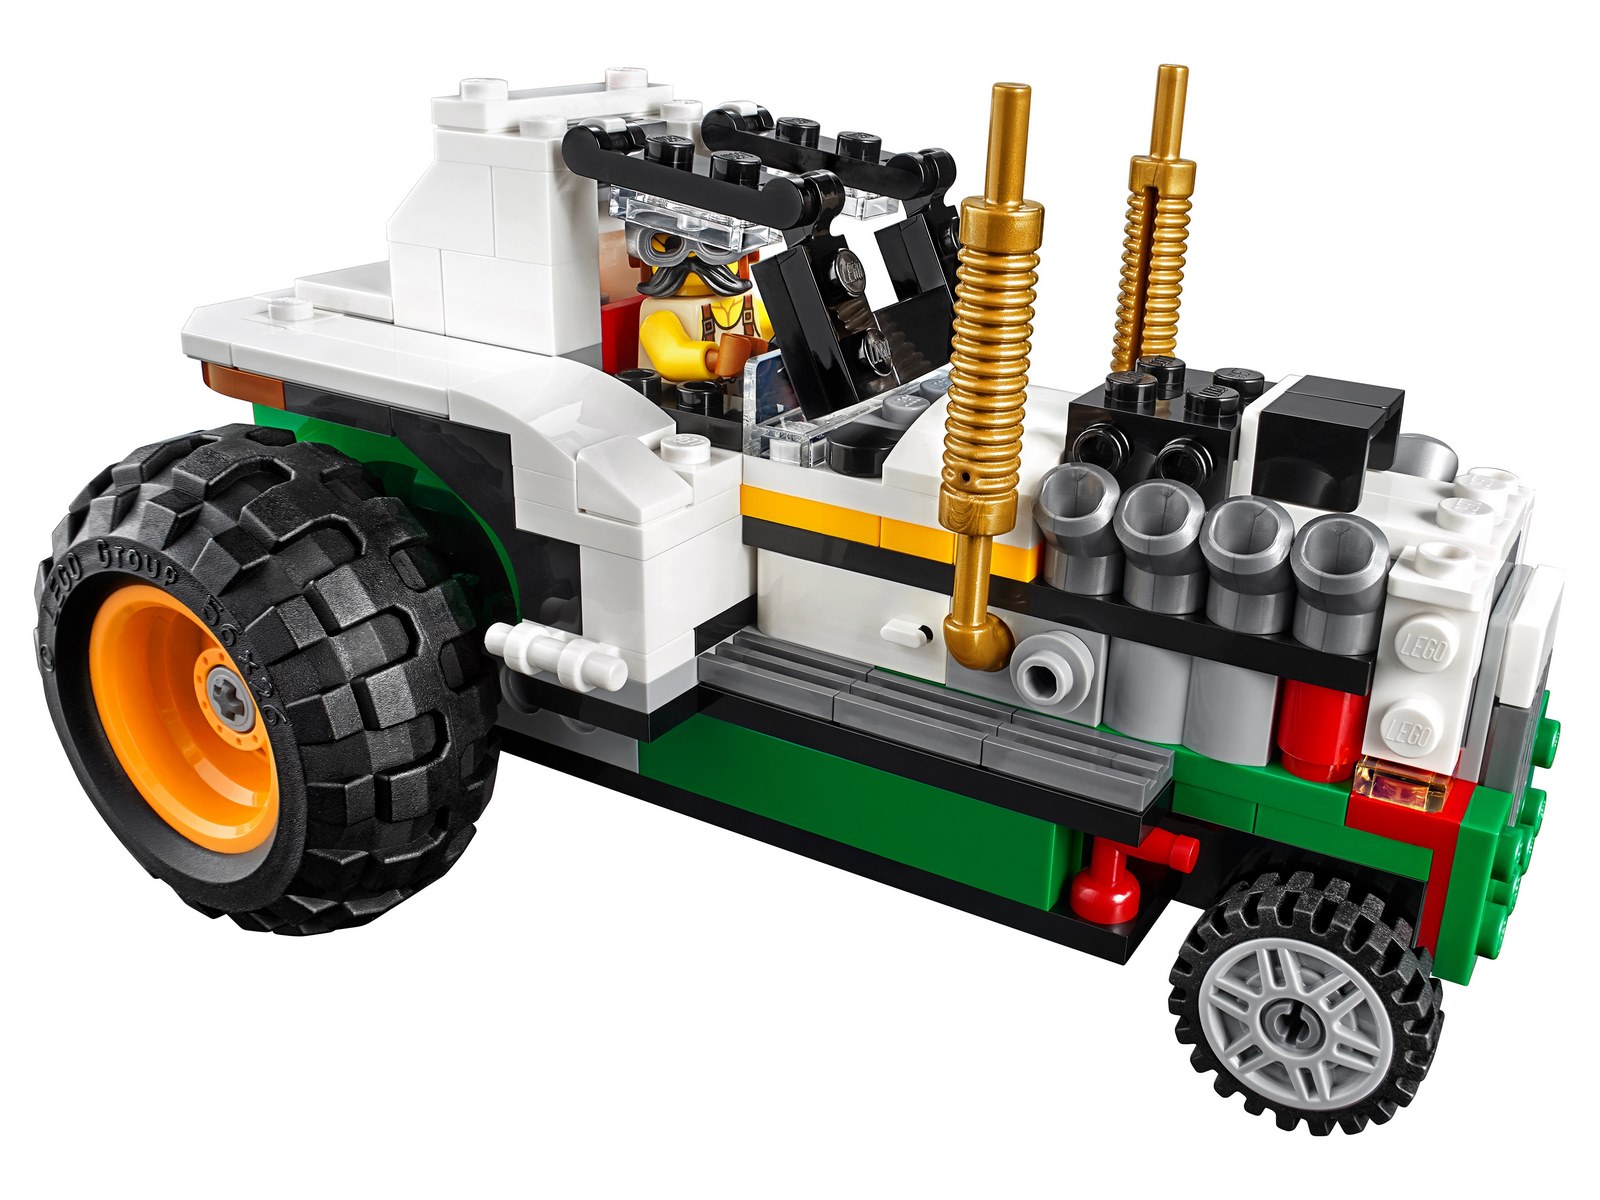 Конструктор LEGO Creator 3в1 «Грузовик Монстрбургер» 31104 / 499 деталей